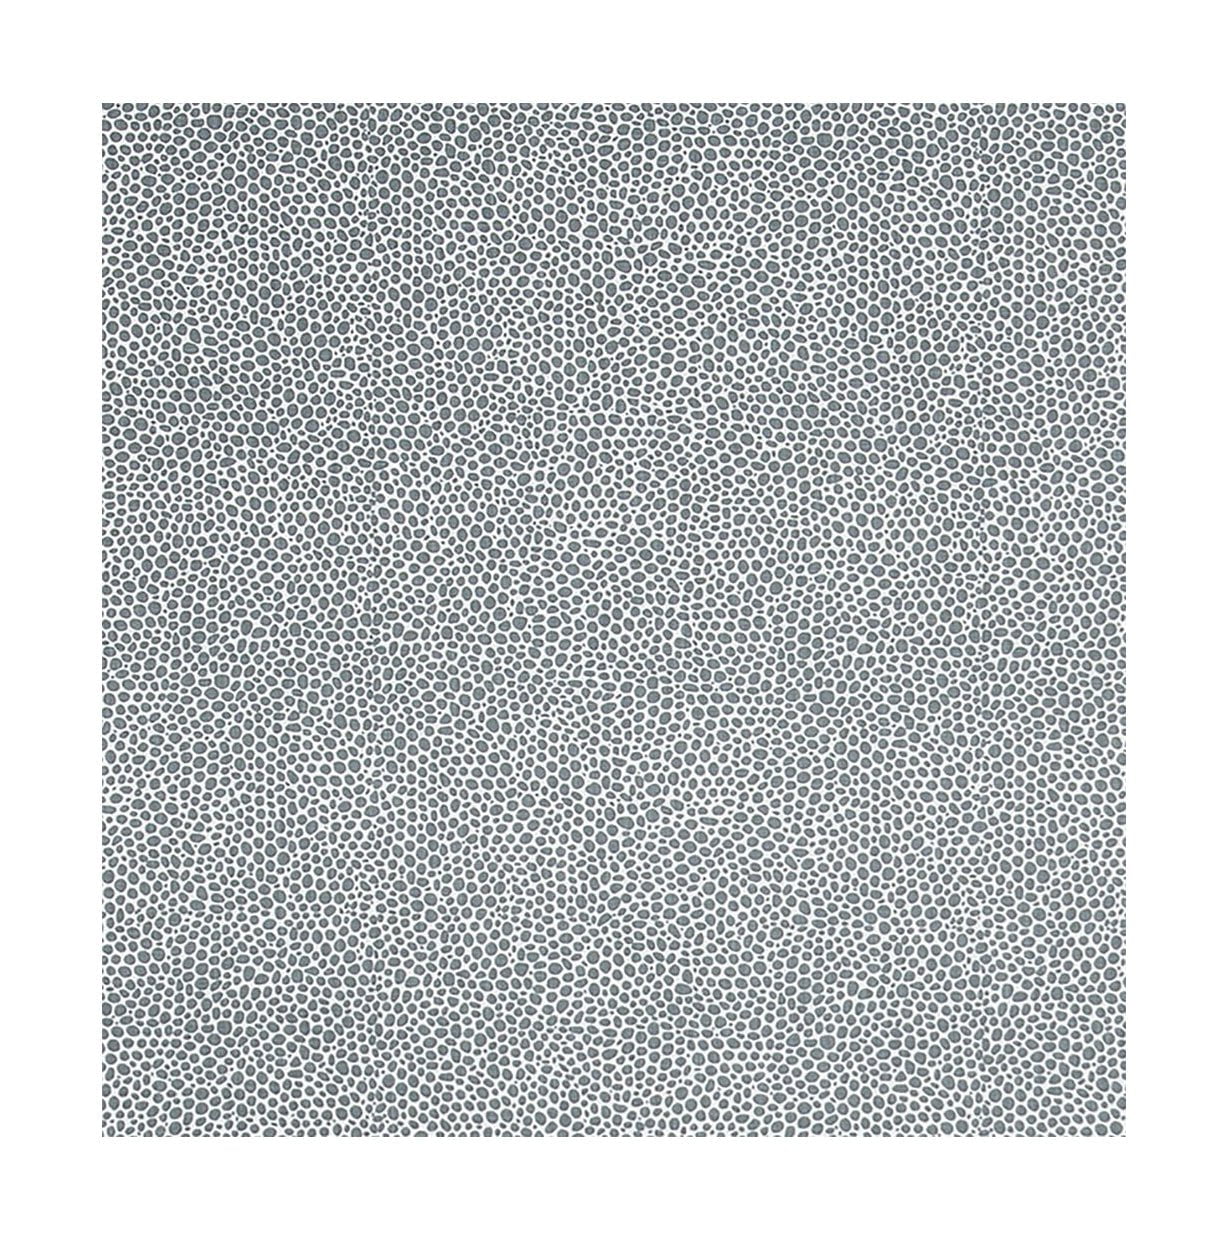 Spira Dotte CTC -stoff med akrylbredde 145 cm (pris per meter), røykblått